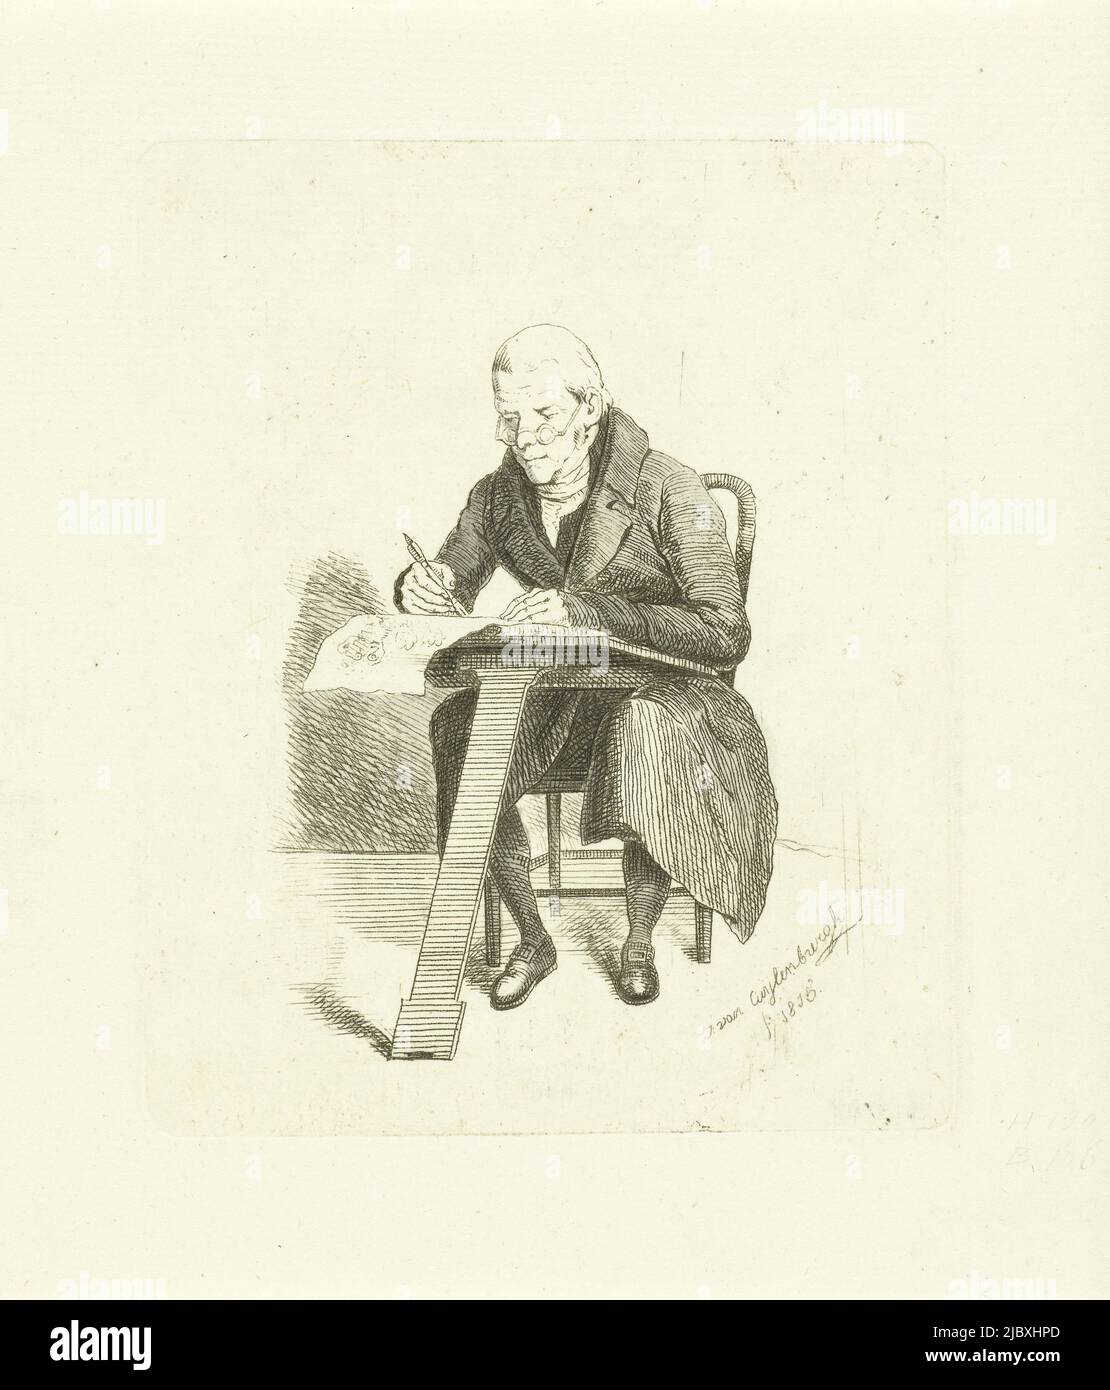 Pittore di segni, tipografo: Johannes van Cuylenburgh, Olanda, 1815, carta, incisione, a 130 mm x l 106 mm Foto Stock